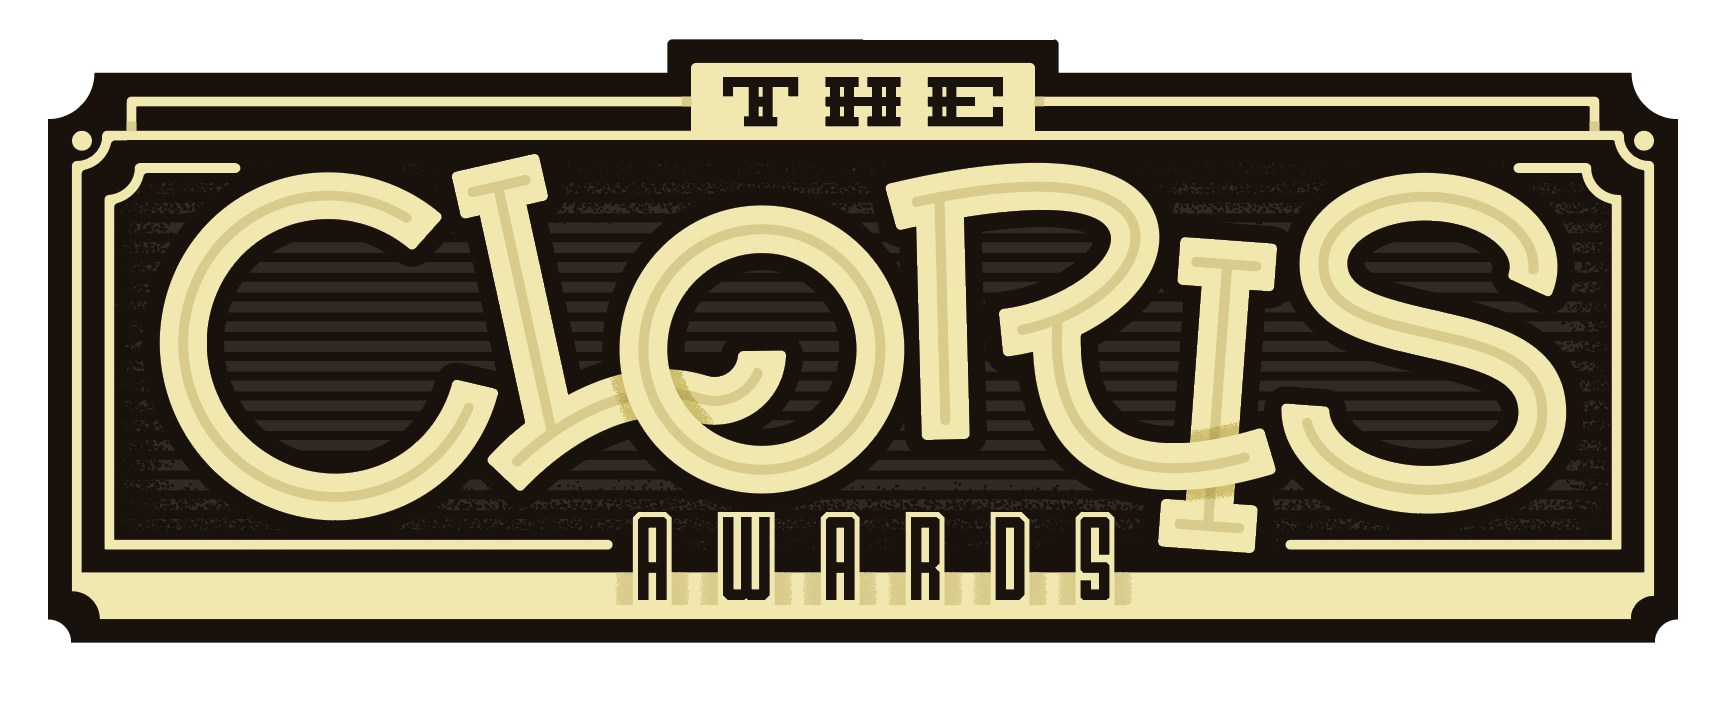 Farmboy Cloris Awards Trophy